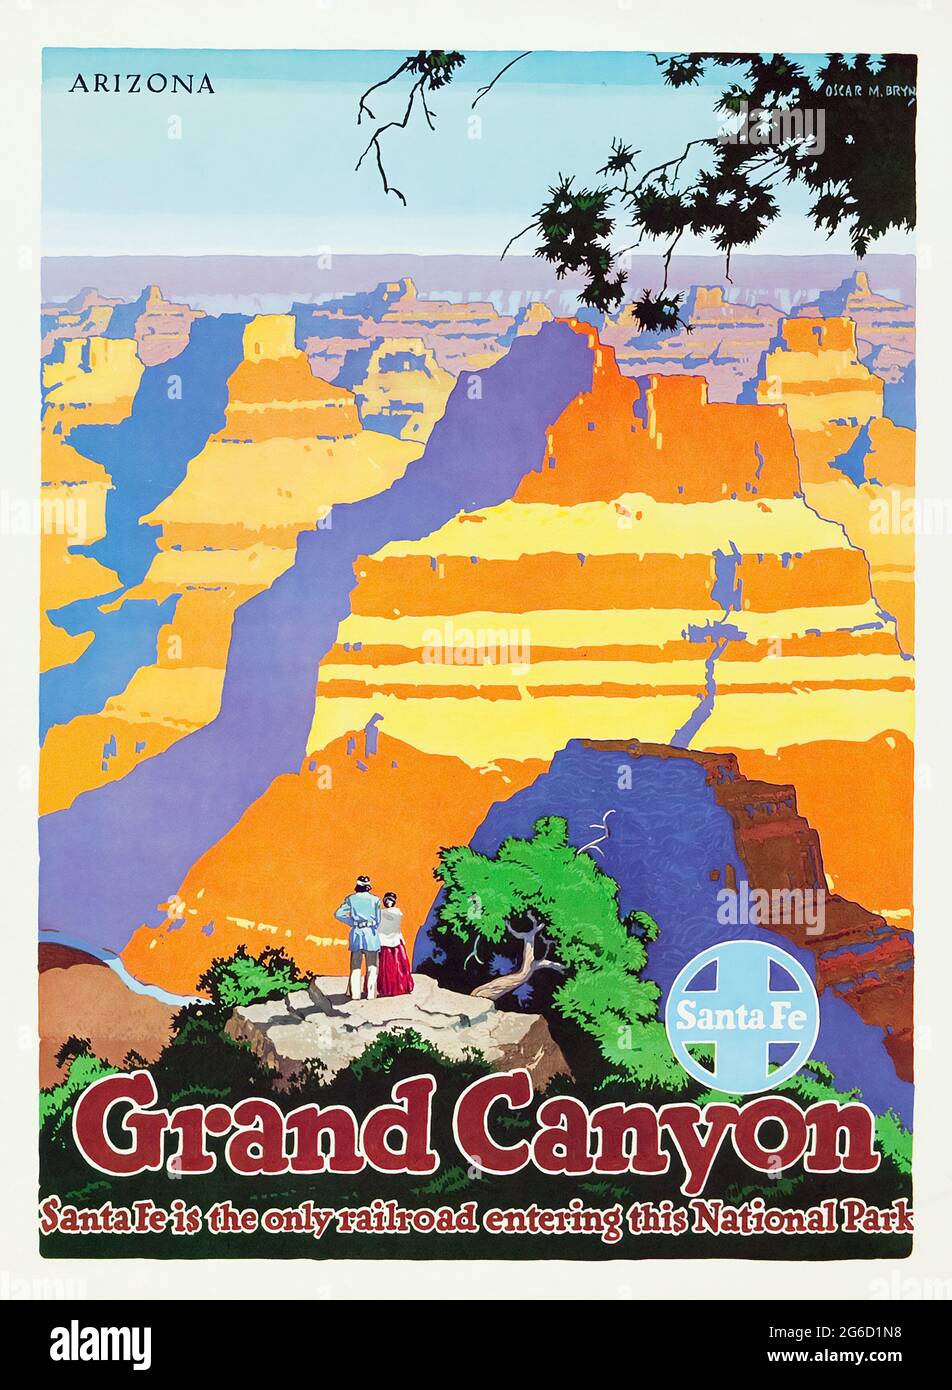 Grand Canyon, Arizona: Poster della ferrovia di Santa Fe. C 1949. Artista: Oscar M. Bryn Foto Stock